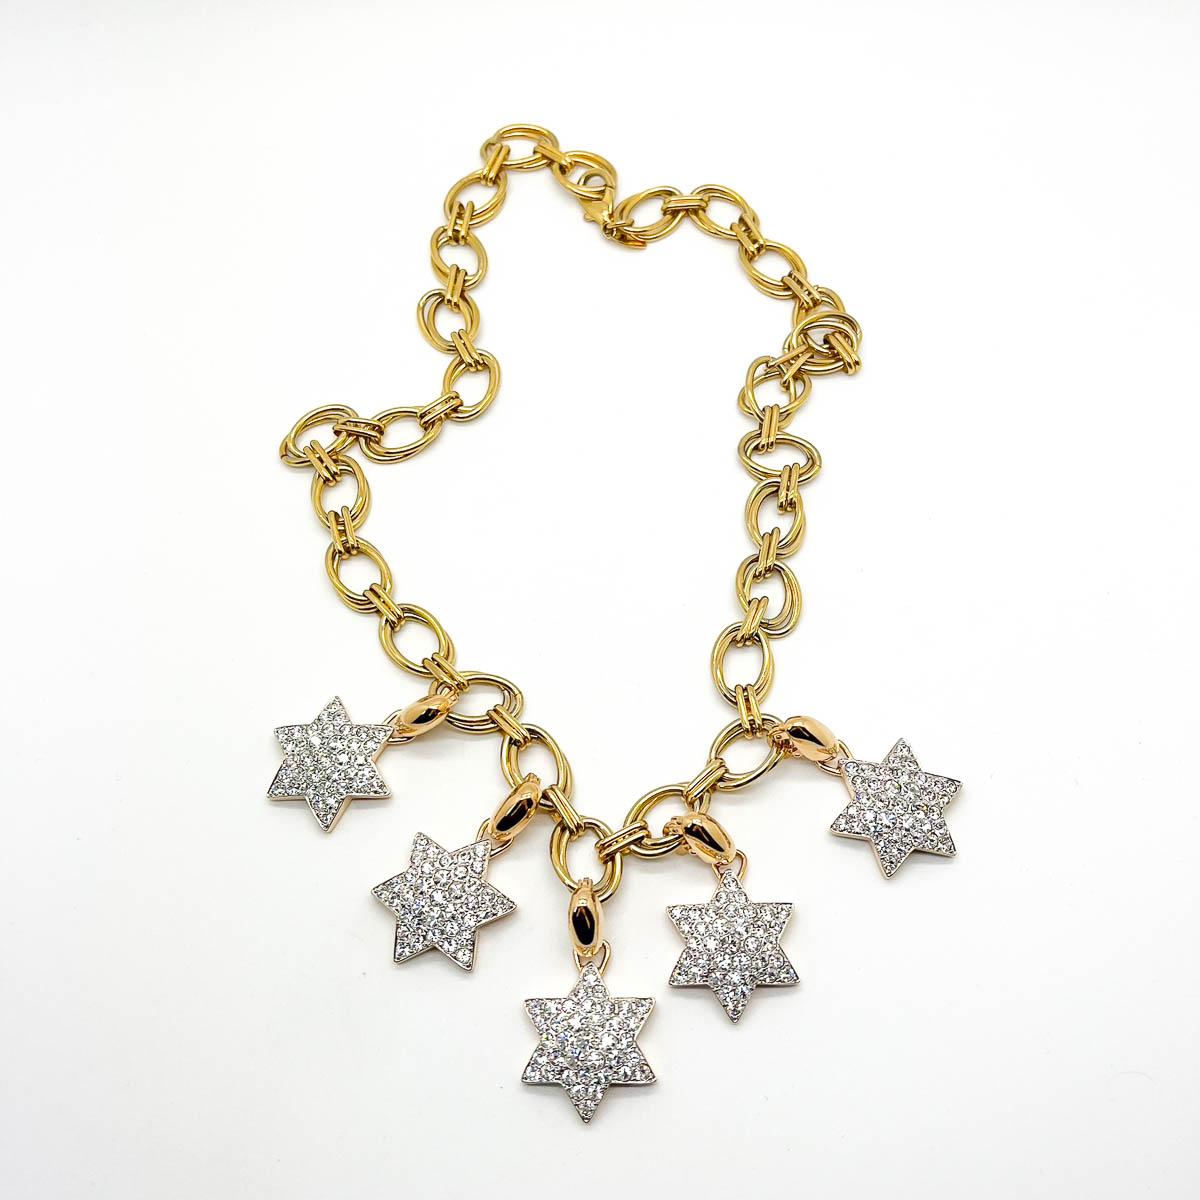 Un spectaculaire collier à breloques vintage en forme d'étoile, avec des charmes amovibles. Une chaîne épaisse ornée de cinq fabuleux charms en forme d'étoile, sertis de cristaux et amovibles. Modifiez votre look et portez autant d'étoiles que vous